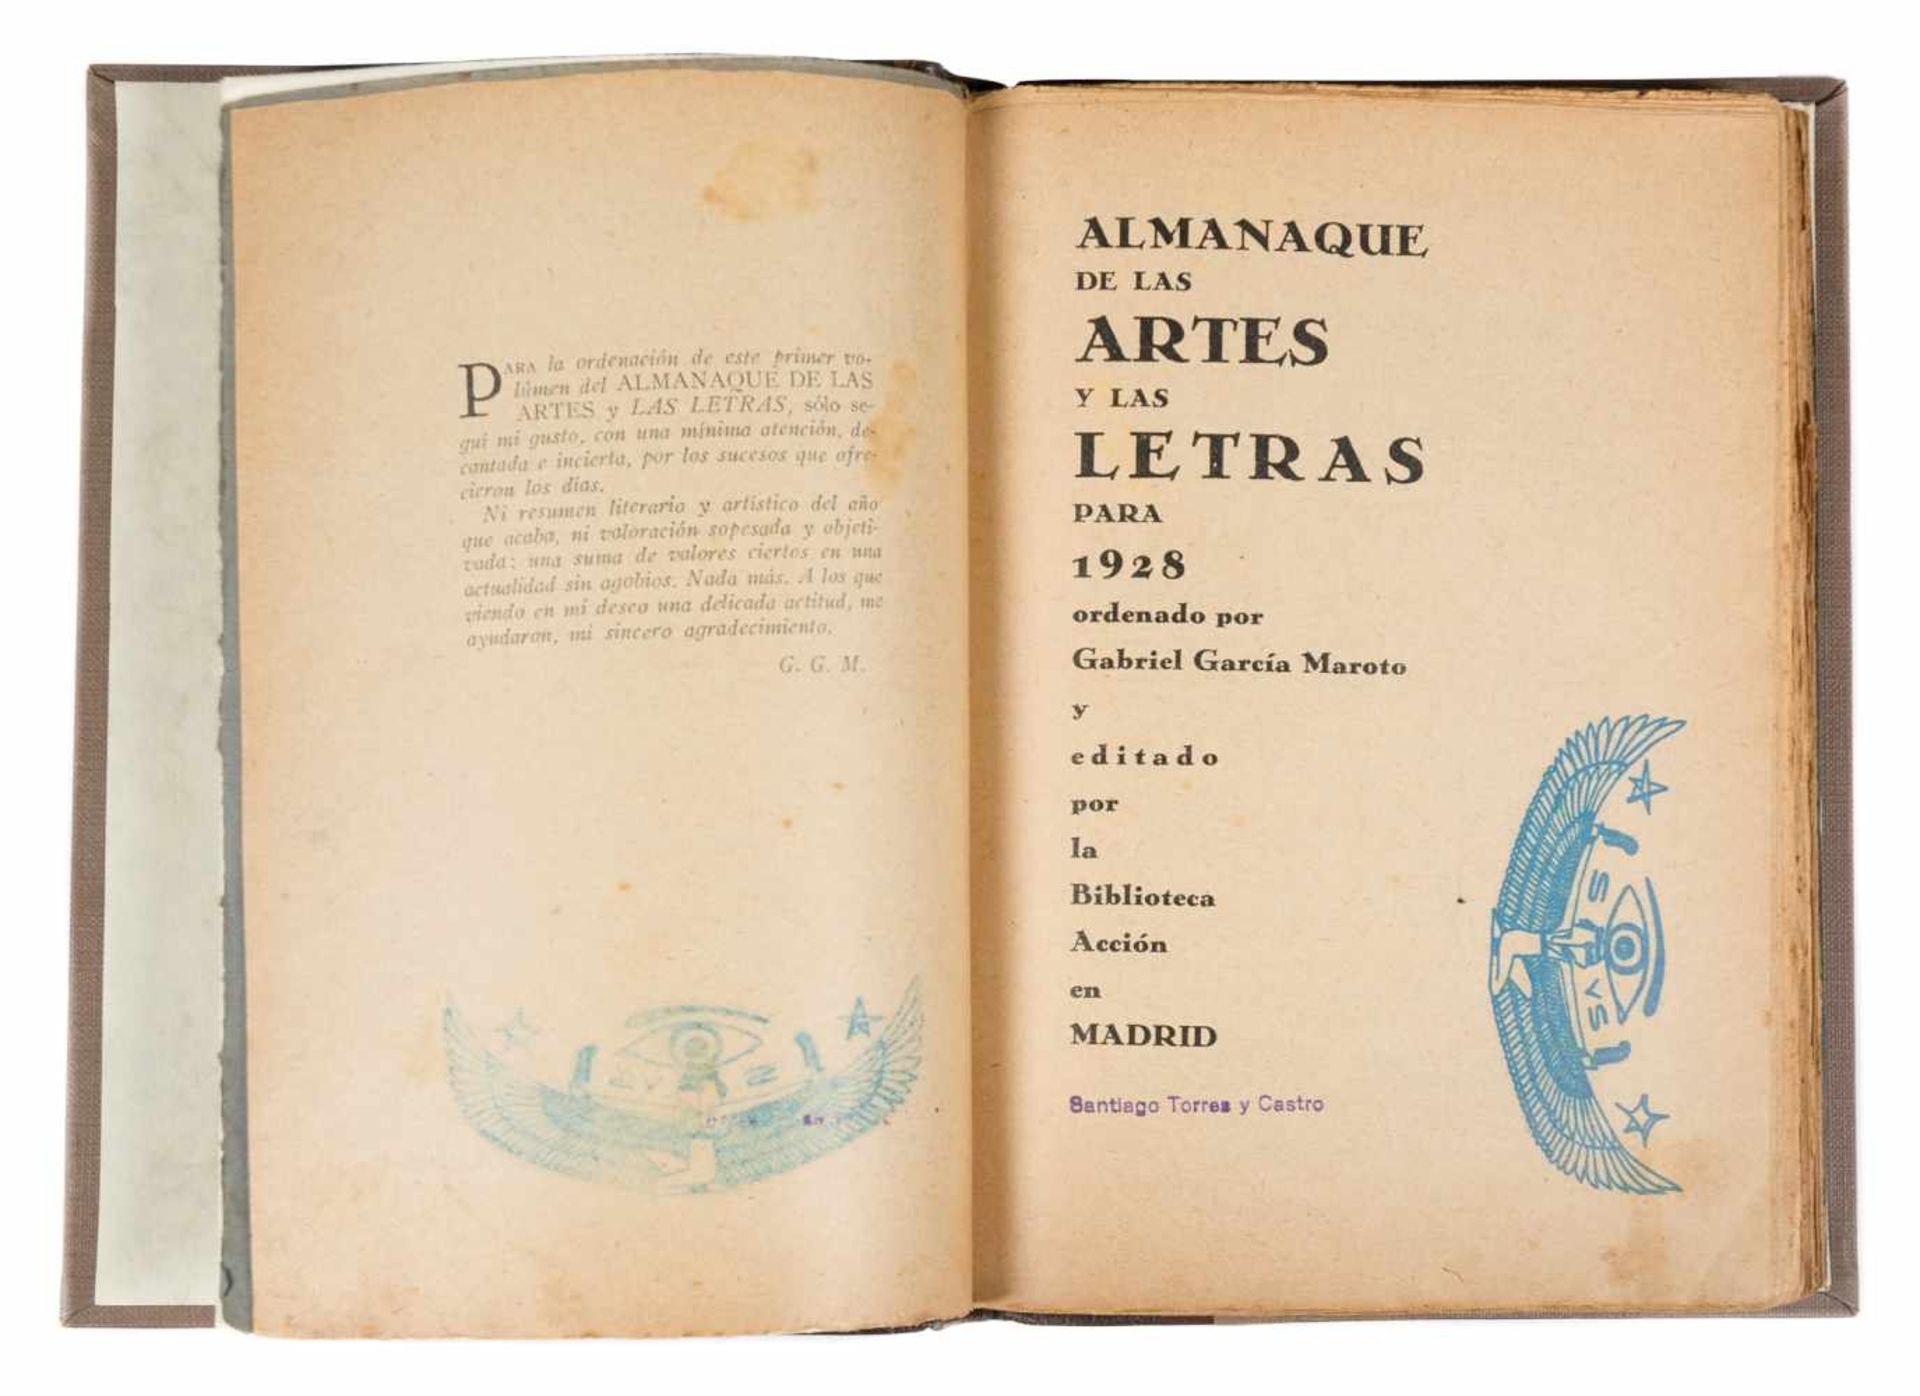 García Maroto, Gabriel. "Almanaque de las artes y las letras para 1928". (Writers and artists